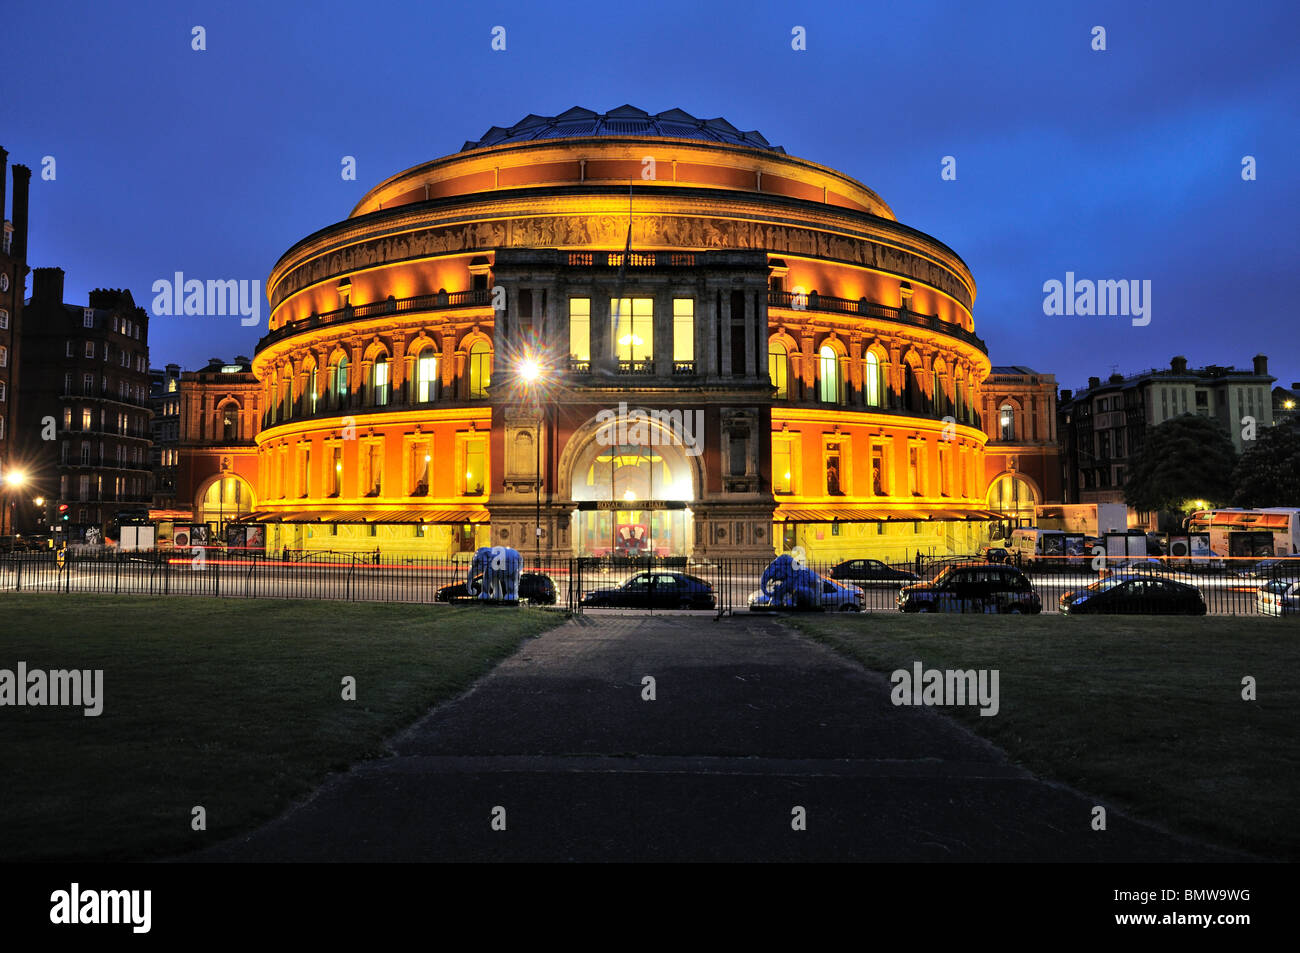 Royal Albert Hall at night Stock Photo